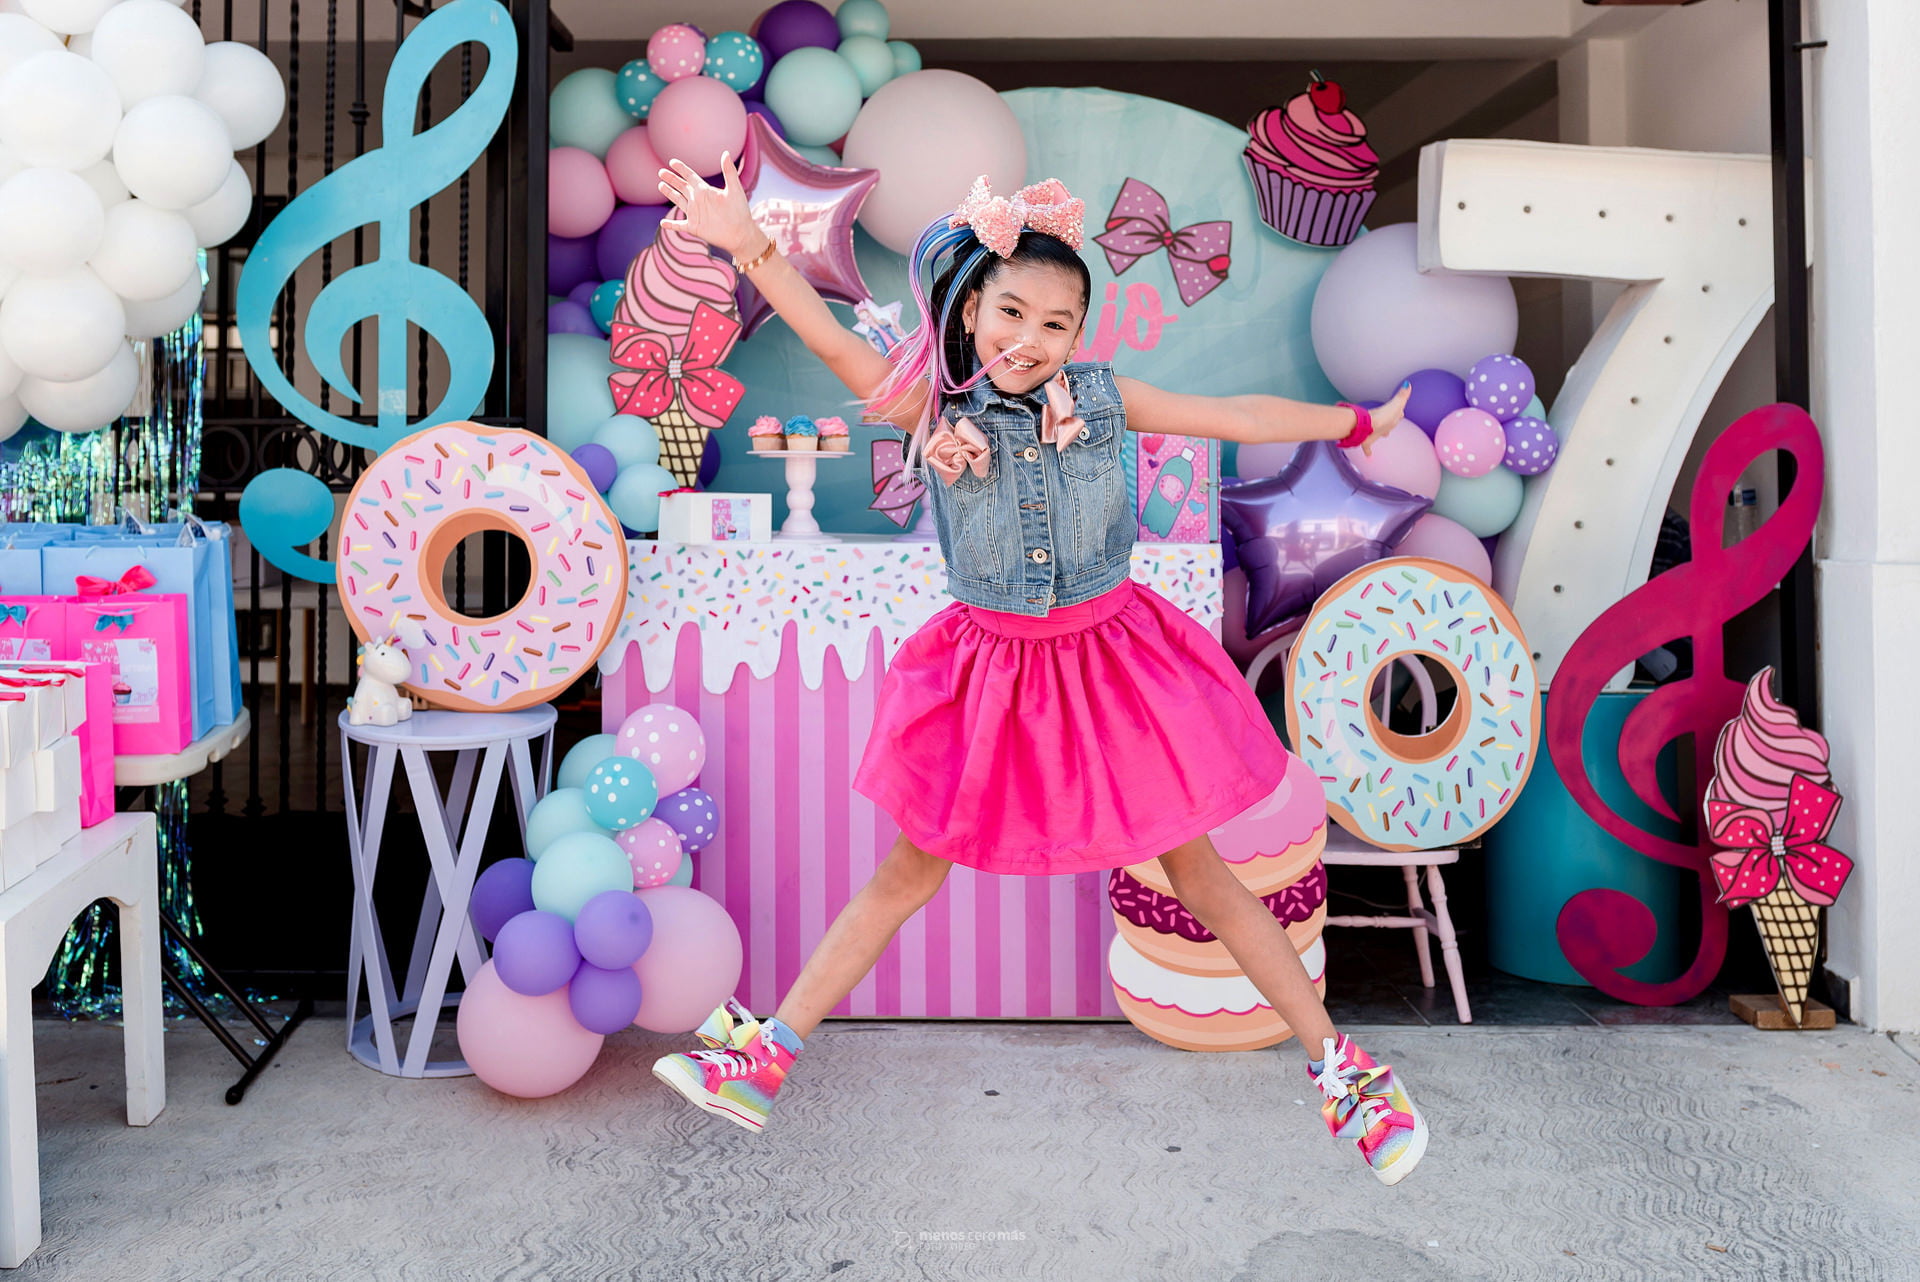 Majo celebra con alegría su séptimo aniversario con una caravana en casa llena de globos y figuras de donas en tonos rosa y celeste. La fotos reflejan la aegría de ese día.